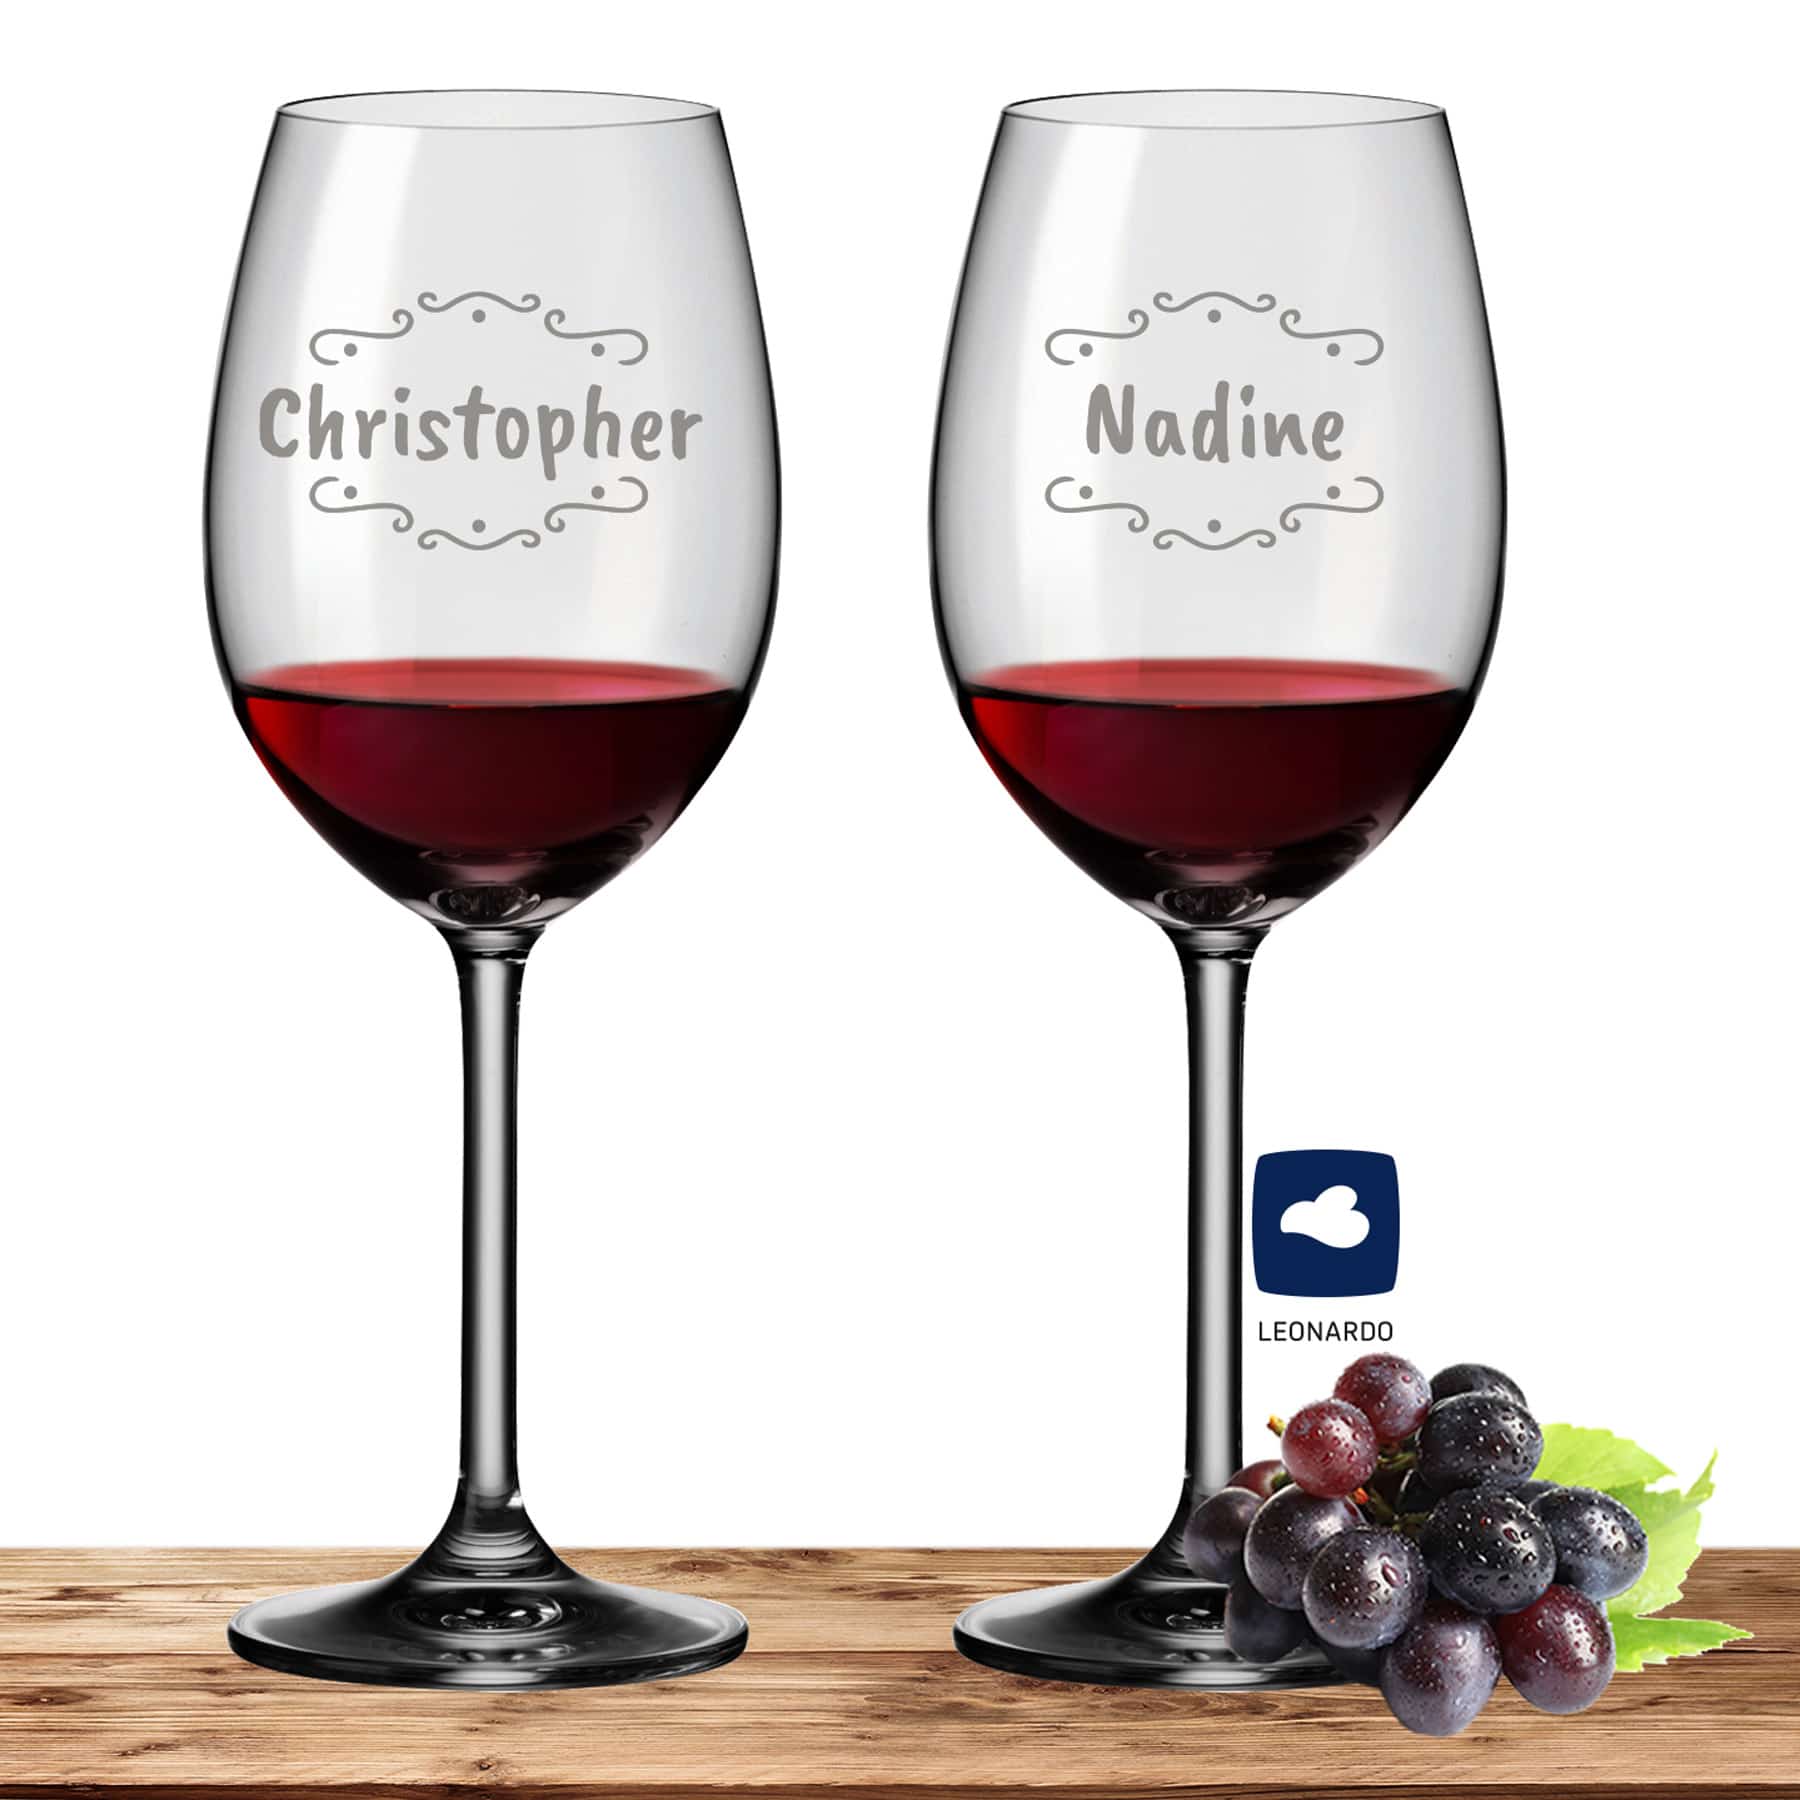 2x Leonardo Rotweinglas mit Namen oder Wunschtext graviert, 460ml, DAILY, personalisiertes Premium Rotweinglas in Gastroqualität (Verzierung 02)